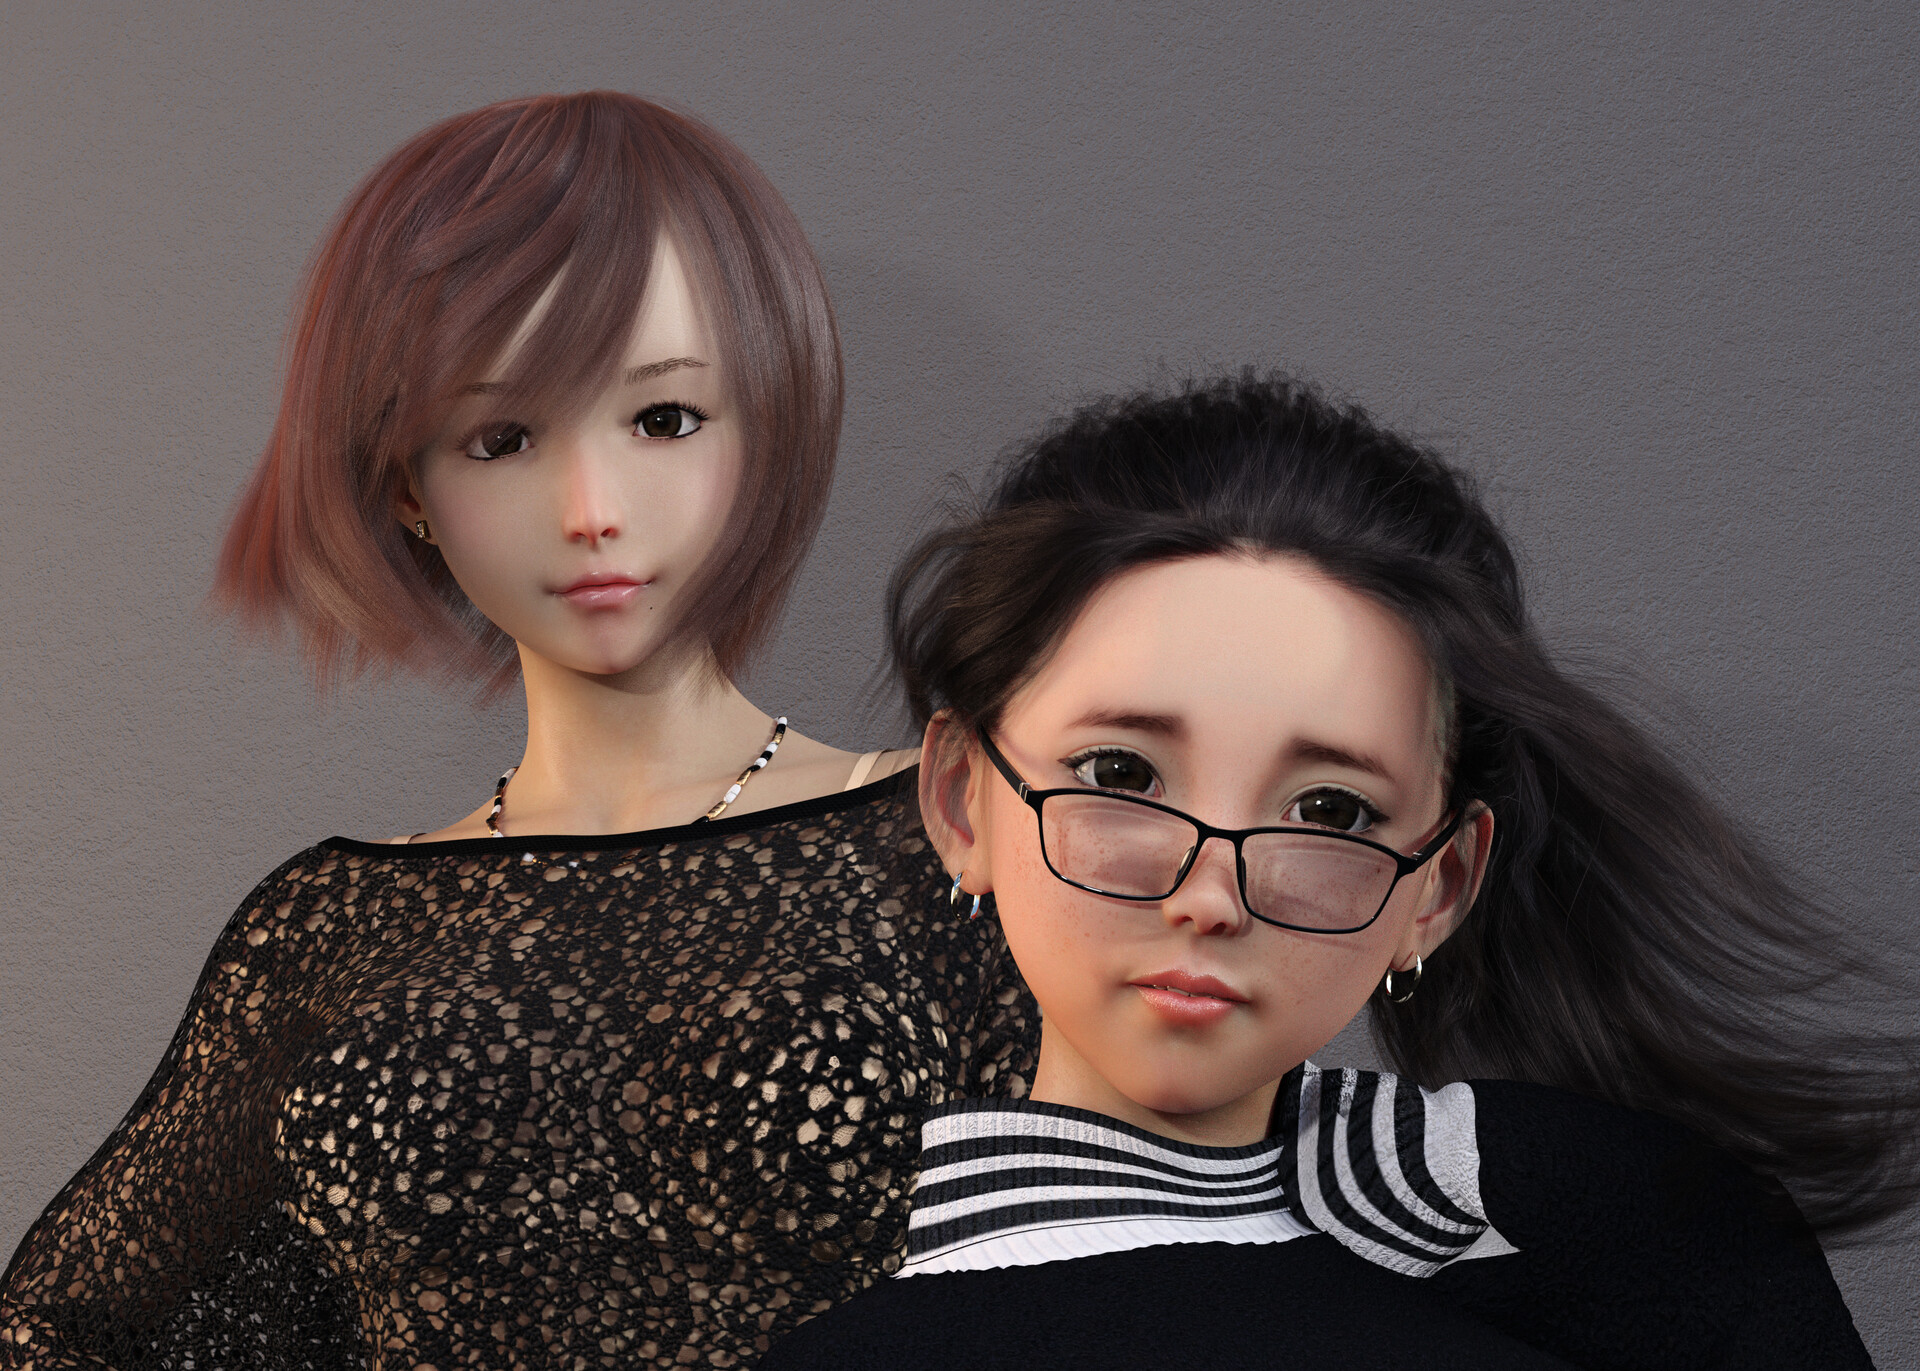 ArtStation - Yumi & Yuna